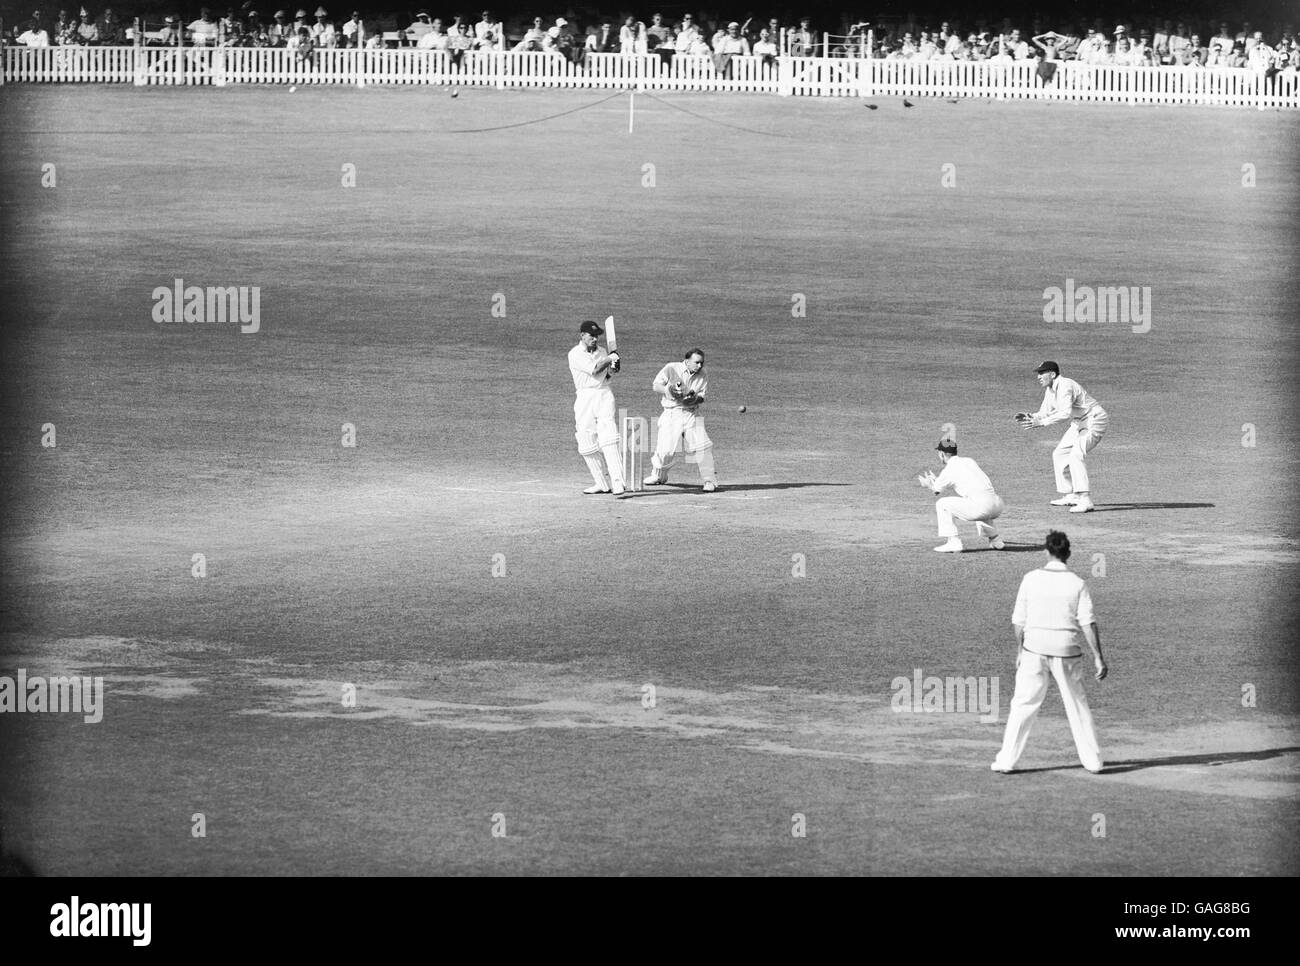 Jack Robertson de Middlesex (l) enbordure une balle de Jim Laker de Surrey (sur la photo) vers les glissades, sous la surveillance du gardien de cricket Arthur McIntyre (deuxième l) Banque D'Images